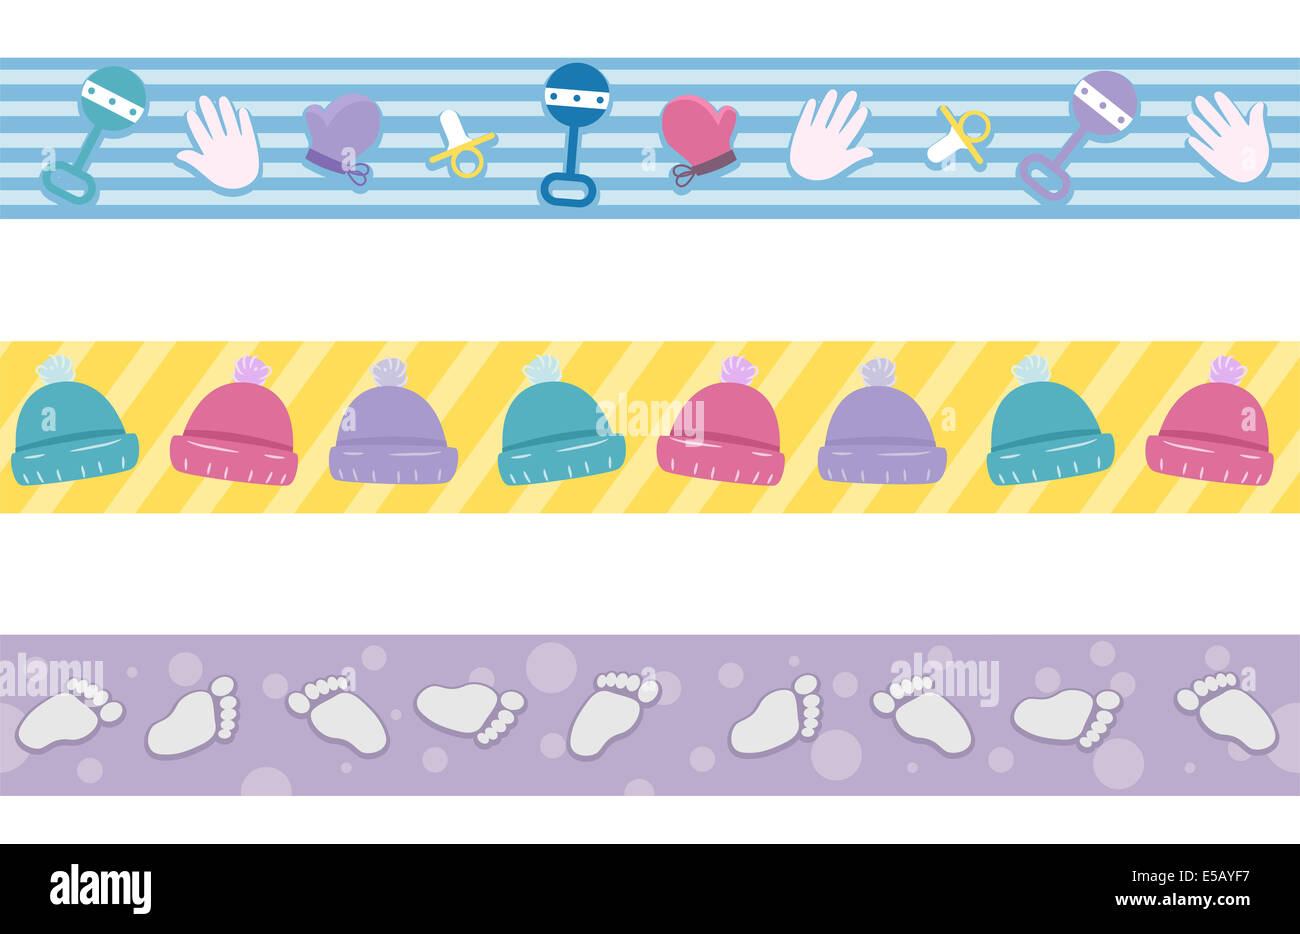 Illustration de la frontière avec différents éléments communément associés avec des bébés Banque D'Images